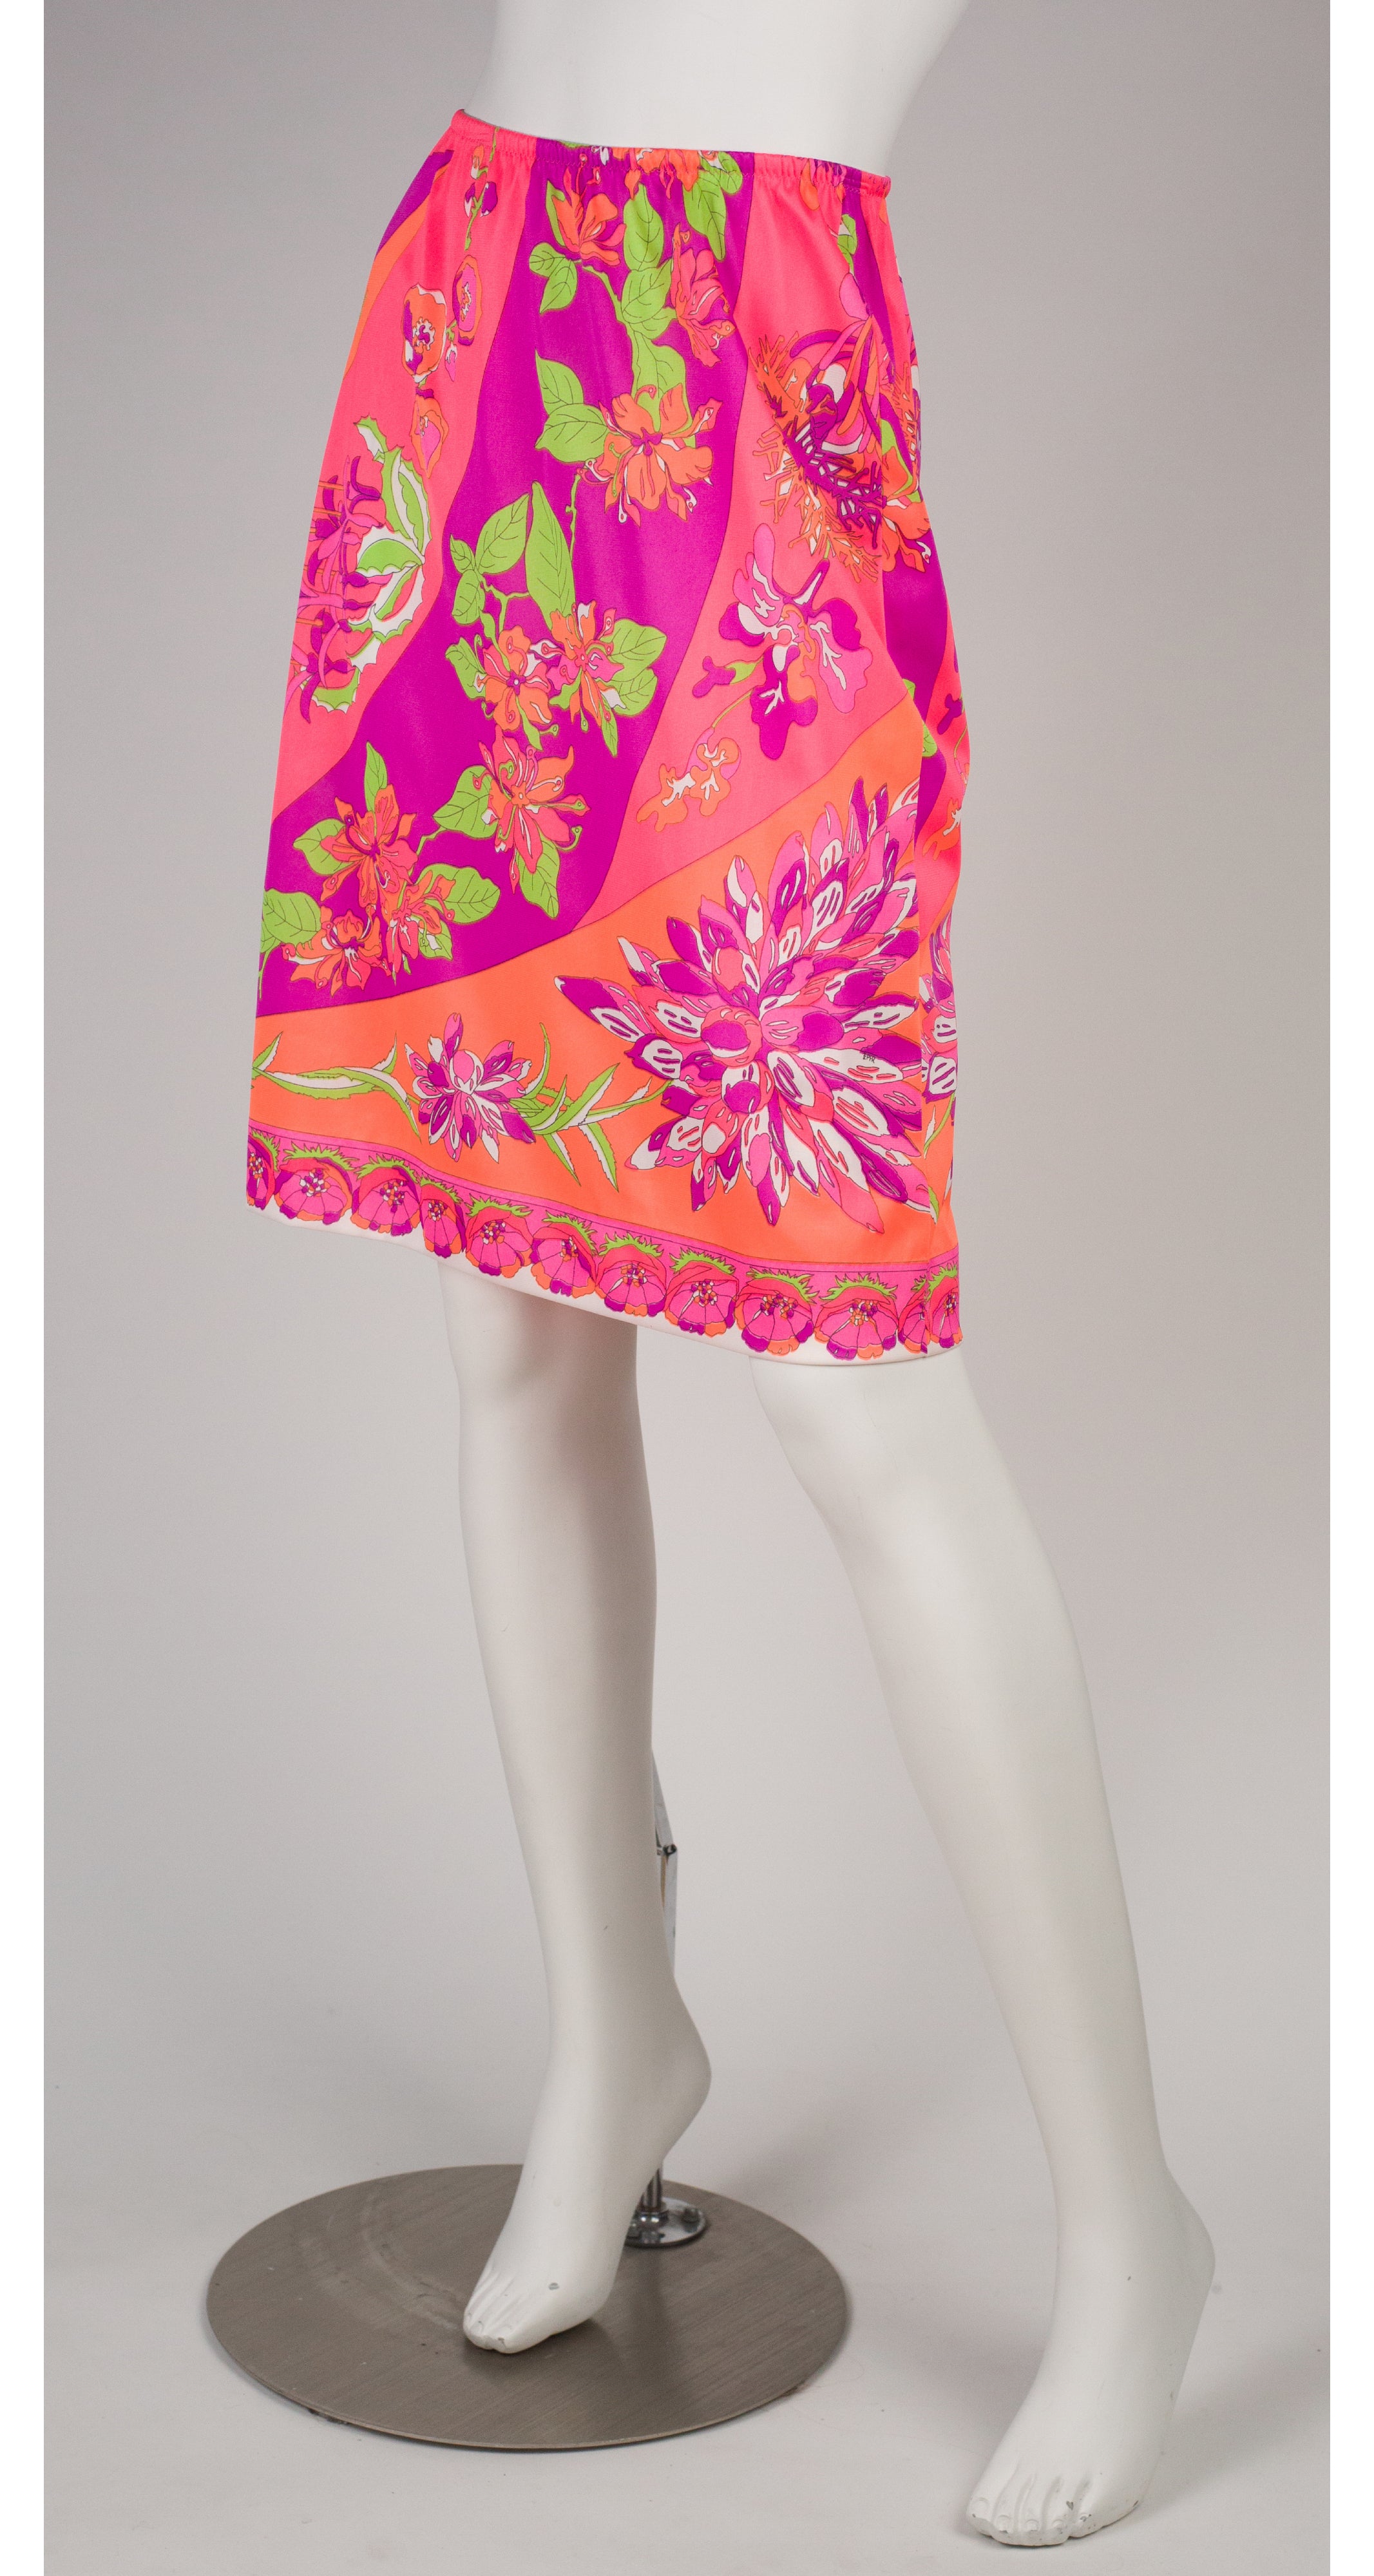 Emilio Pucci x Formfit Rogers 1960s Vibrant Floral Lingerie Slip Skirt ...